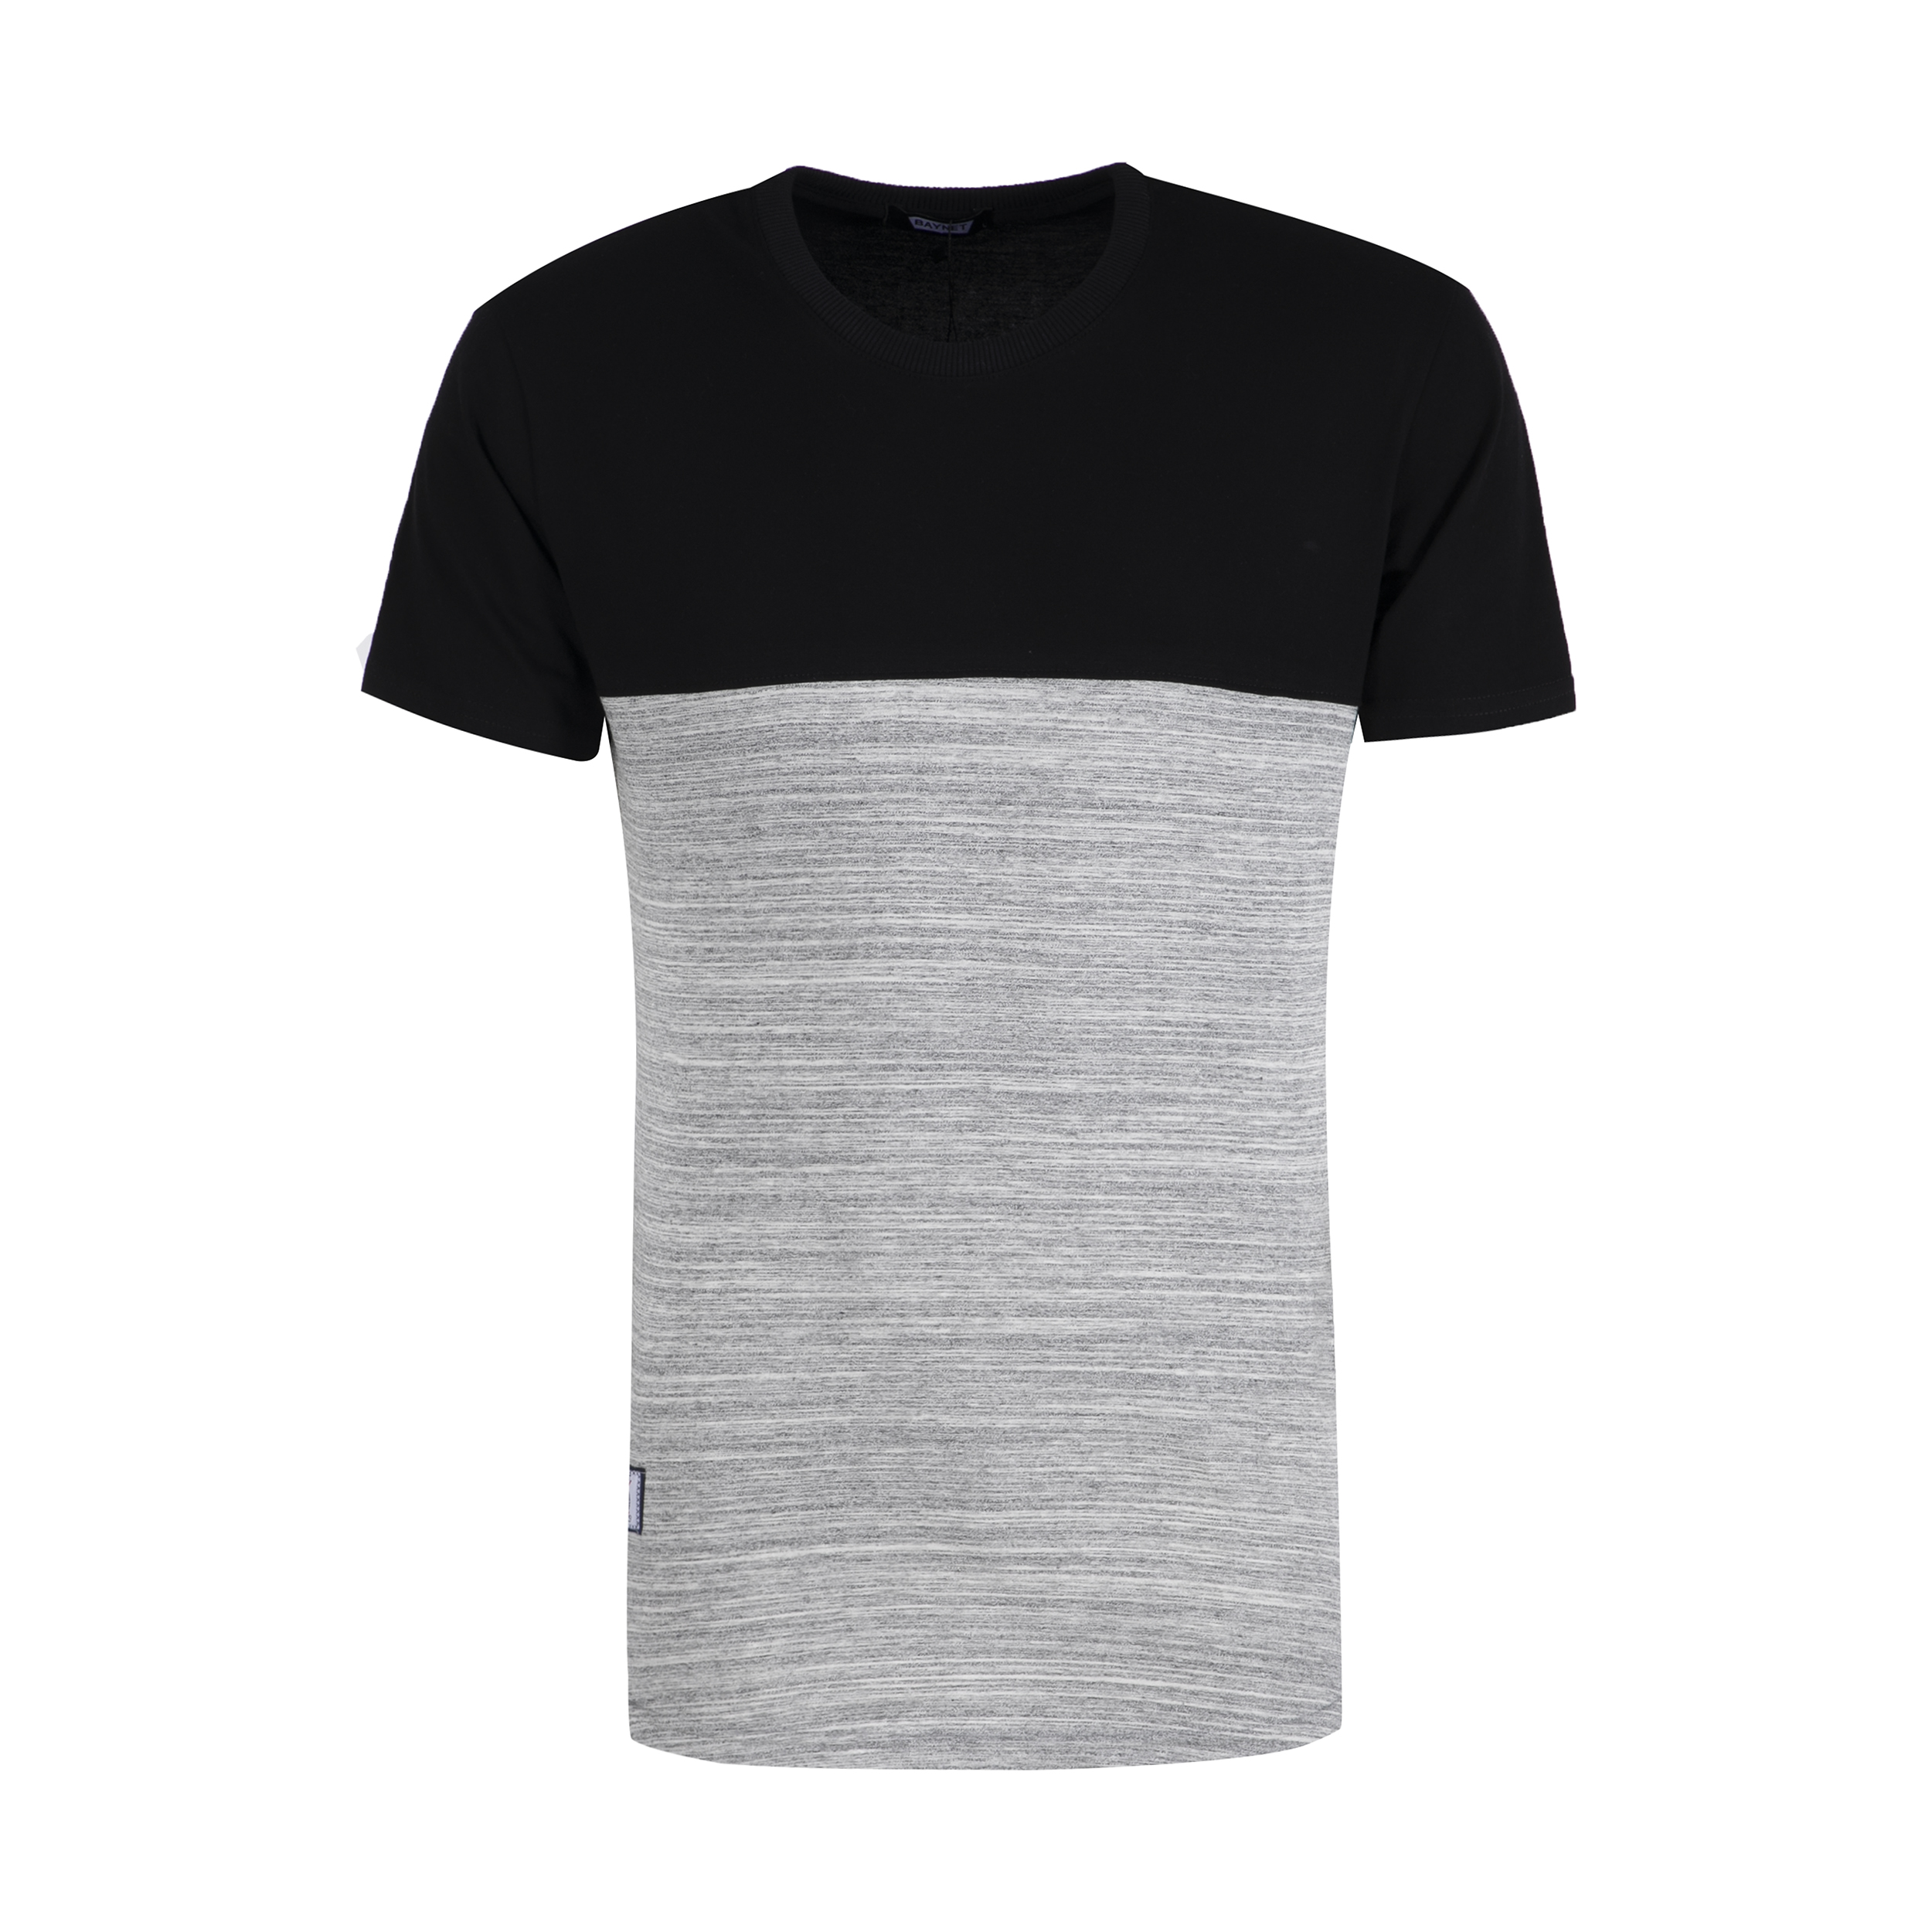 نقد و بررسی تی شرت مردانه باینت مدل 2261385-9399 توسط خریداران